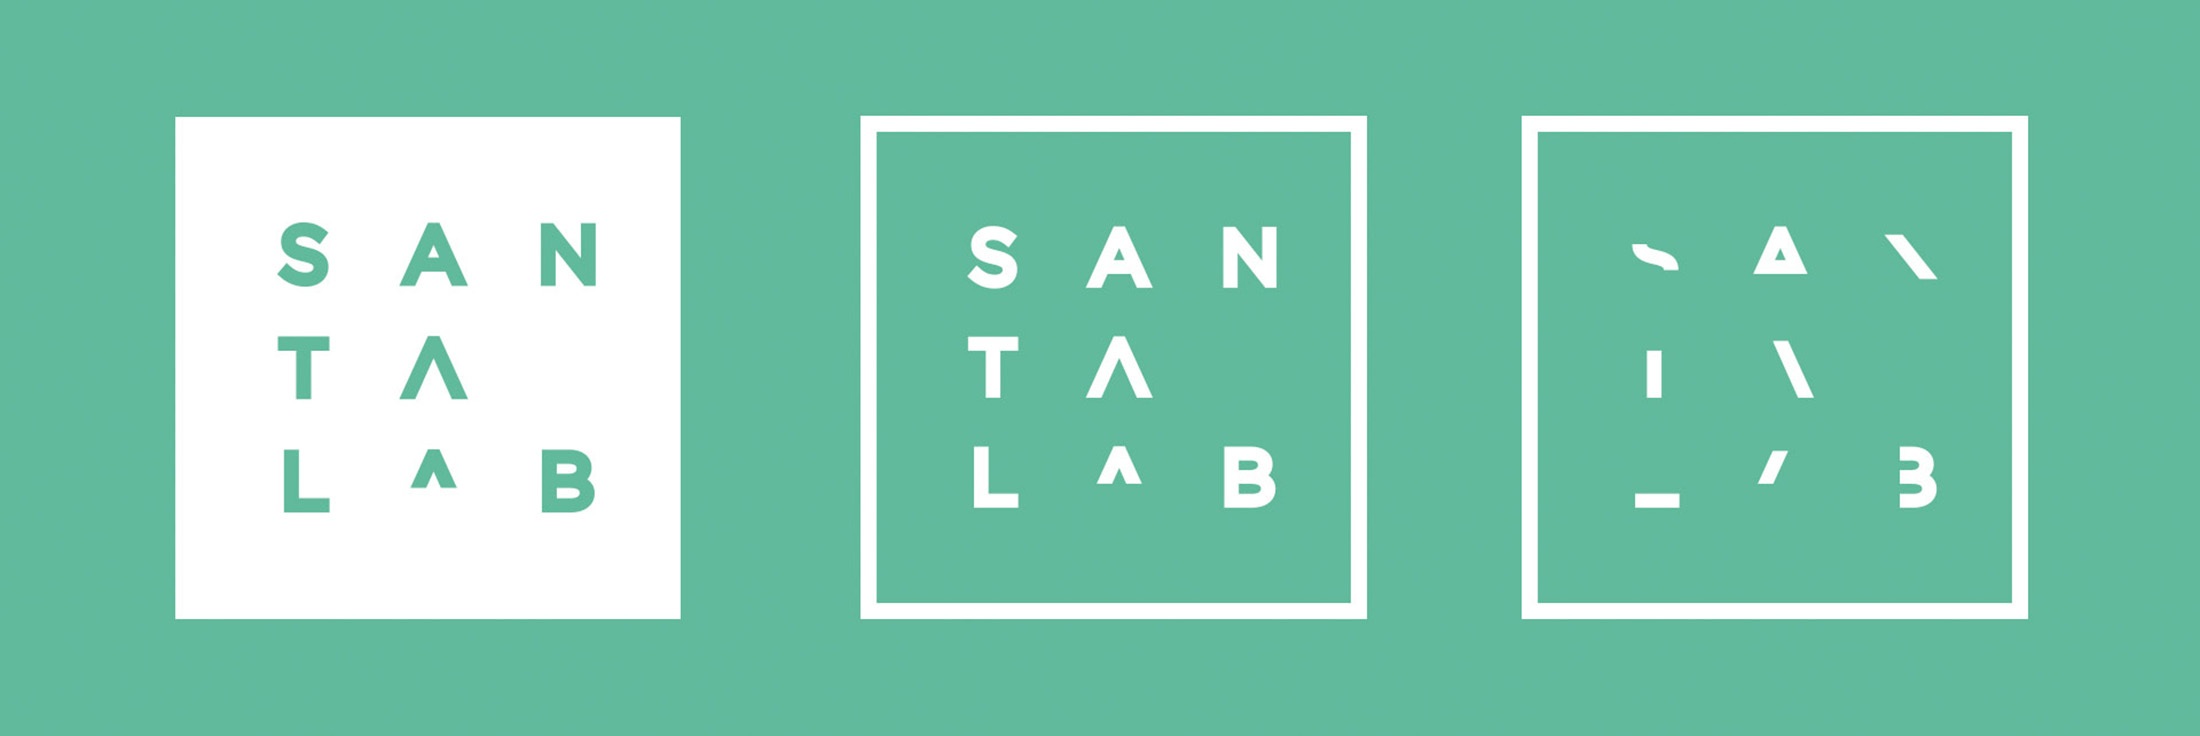 Santalab: Laboratorio de Innovación Pública